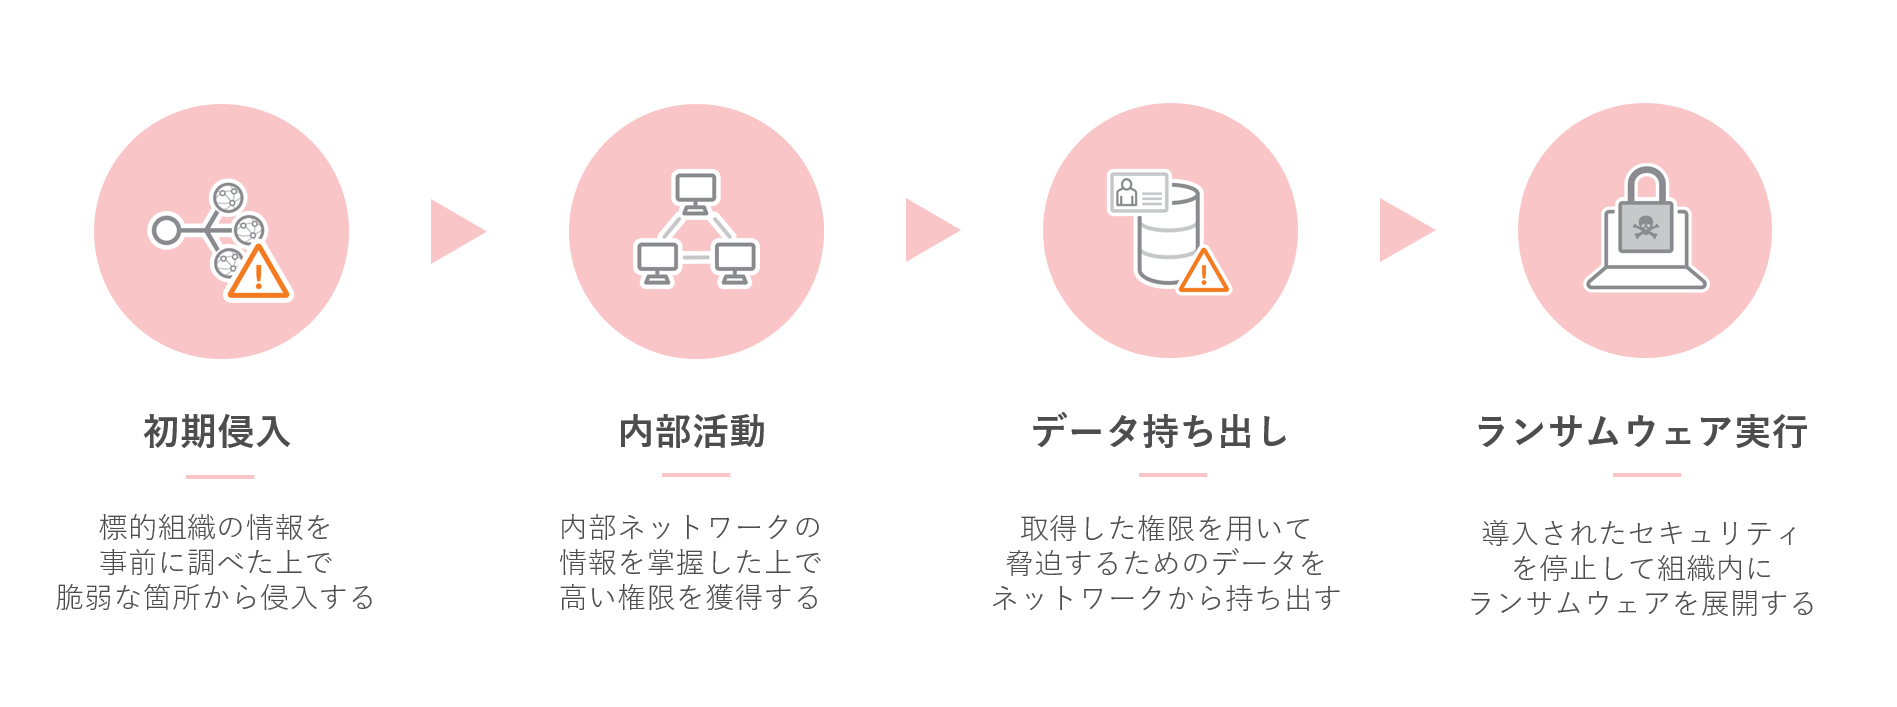 日本語による身代金要求メッセージ例